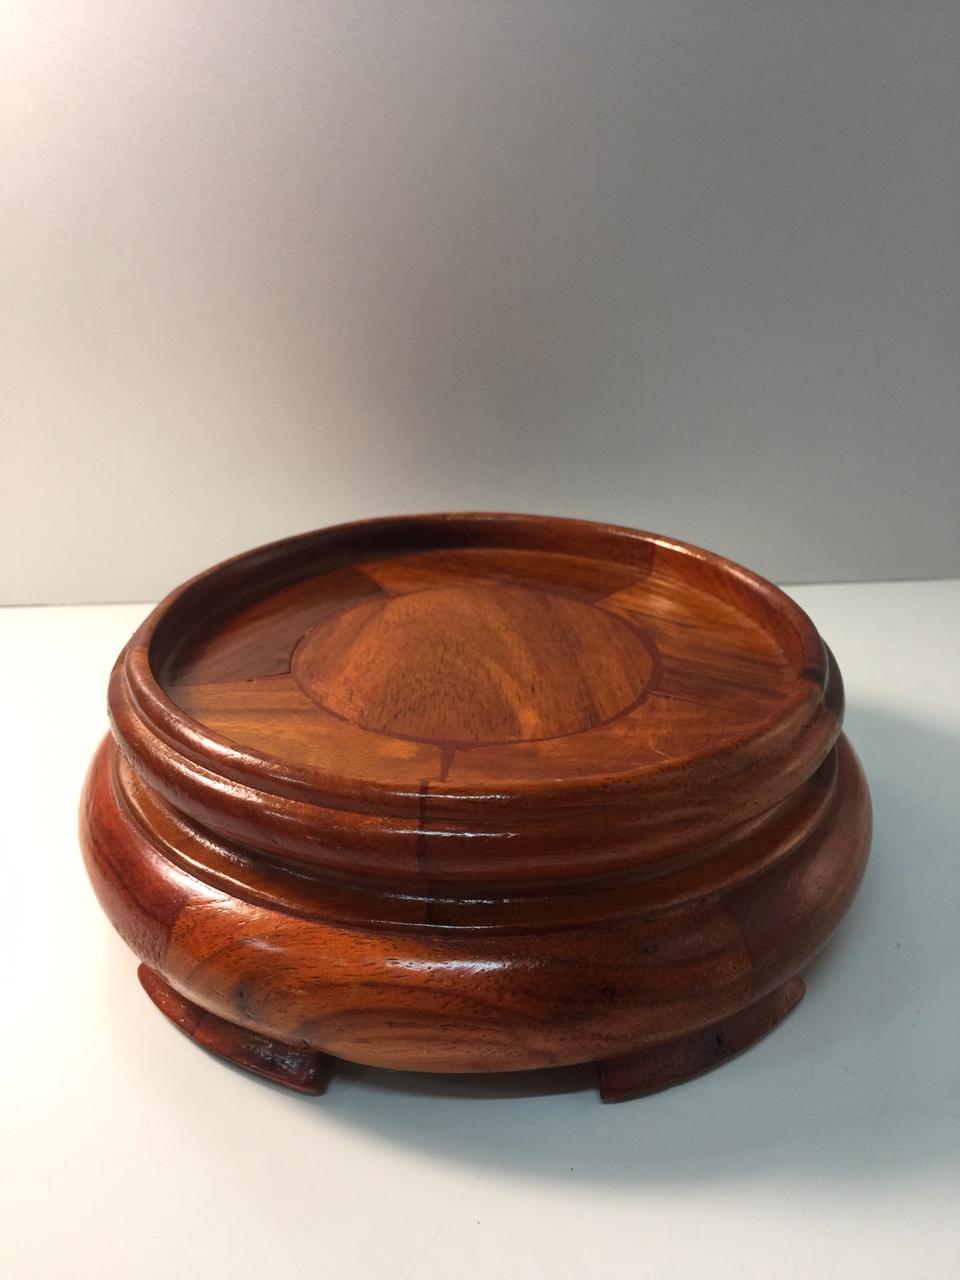 Đế Bát Hương chất liệu gỗ hương (kê bát hương) - 5,5x10 cm